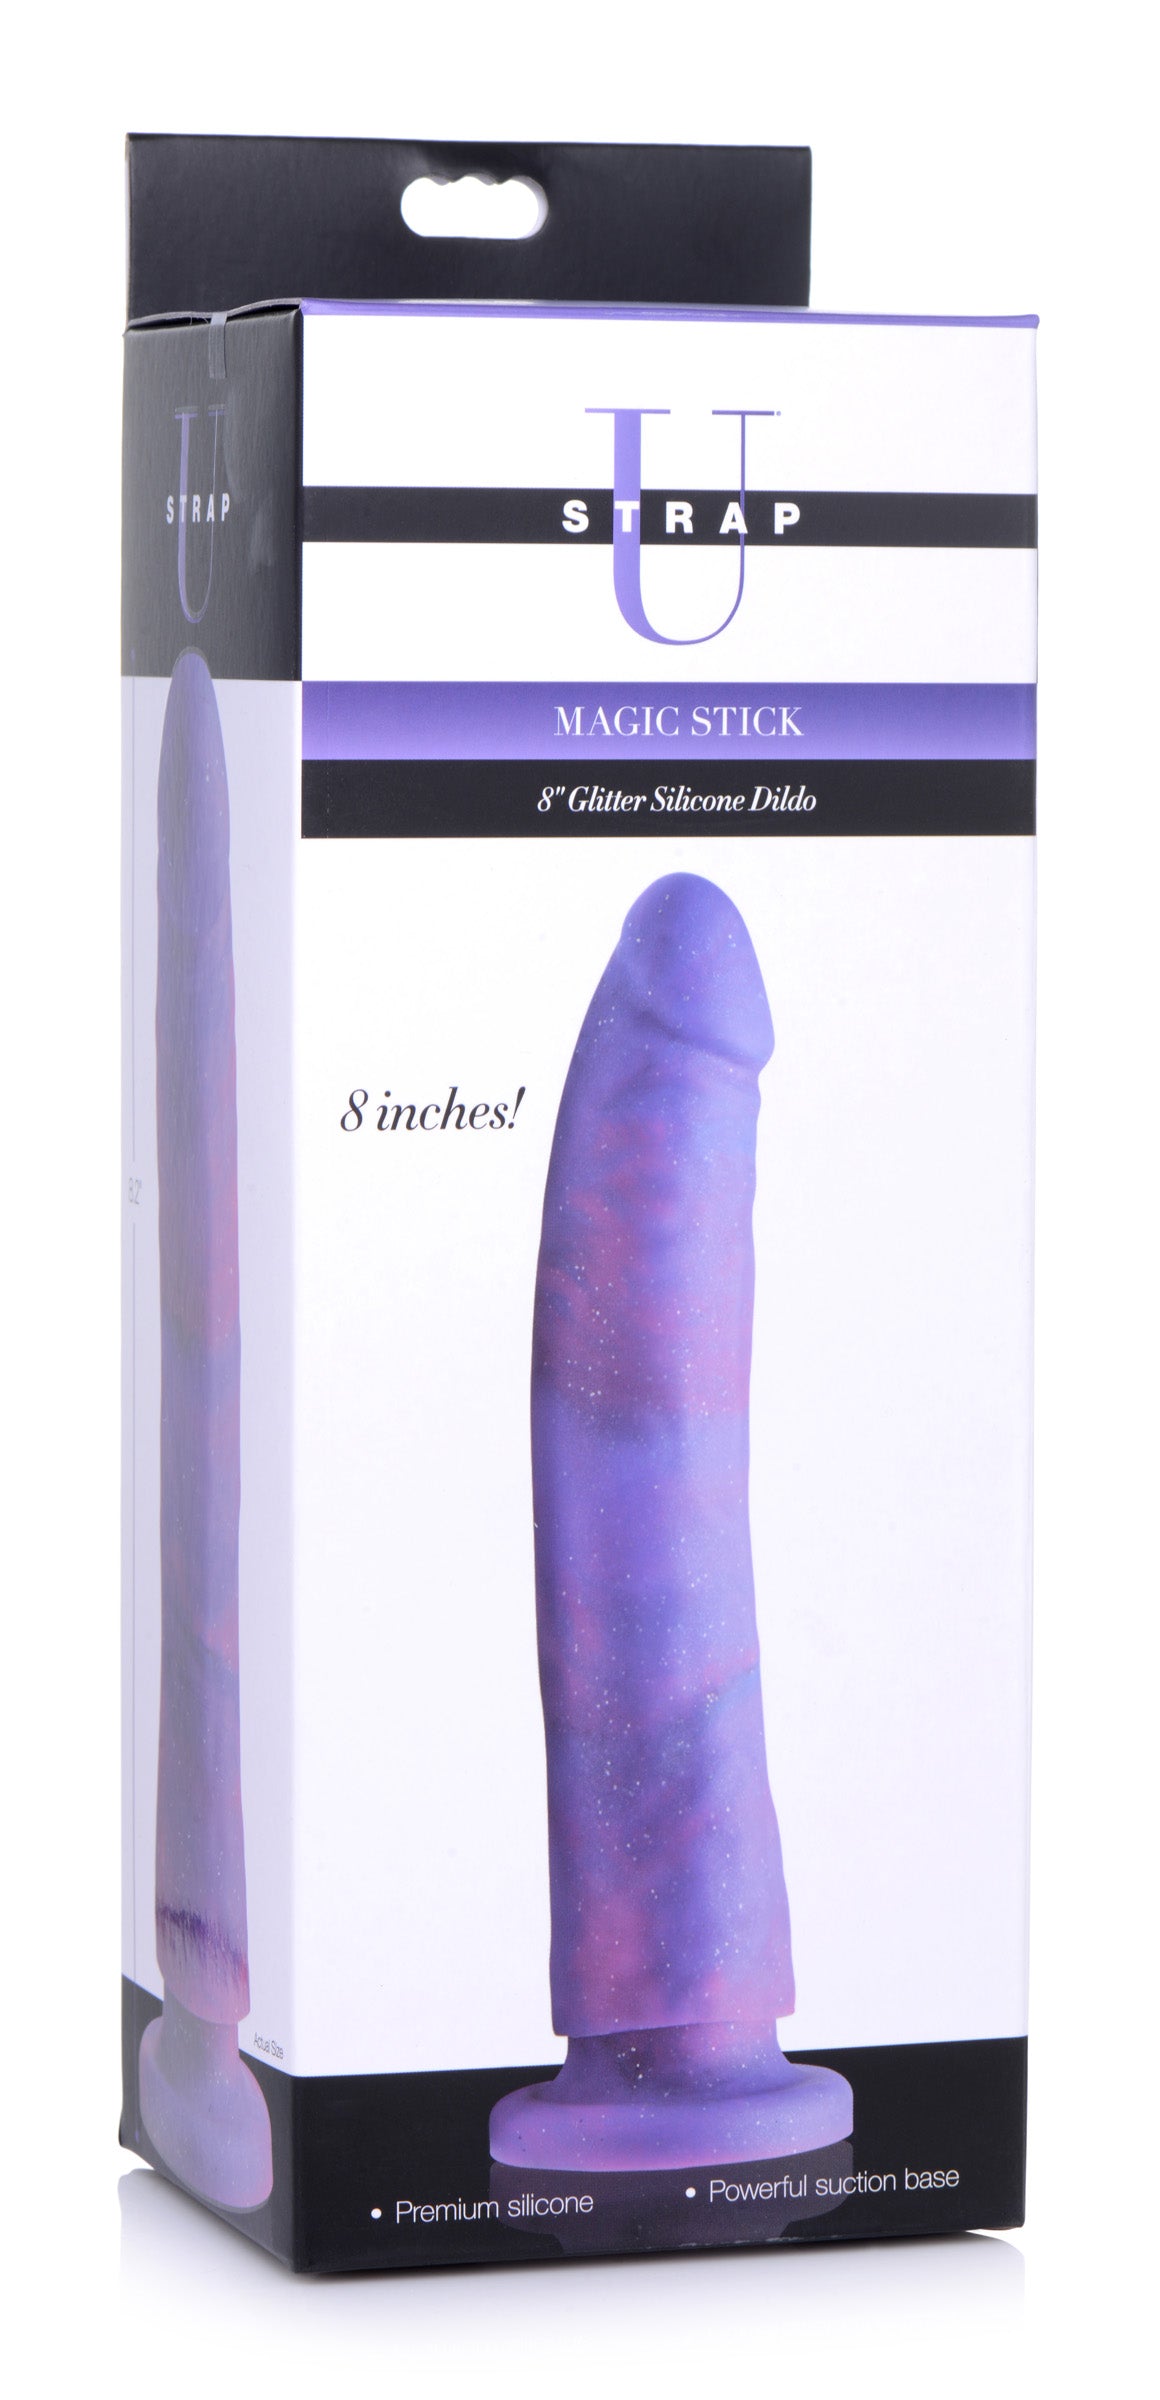 Magic Stick Glitter Silicone Dildo - 8 Inch